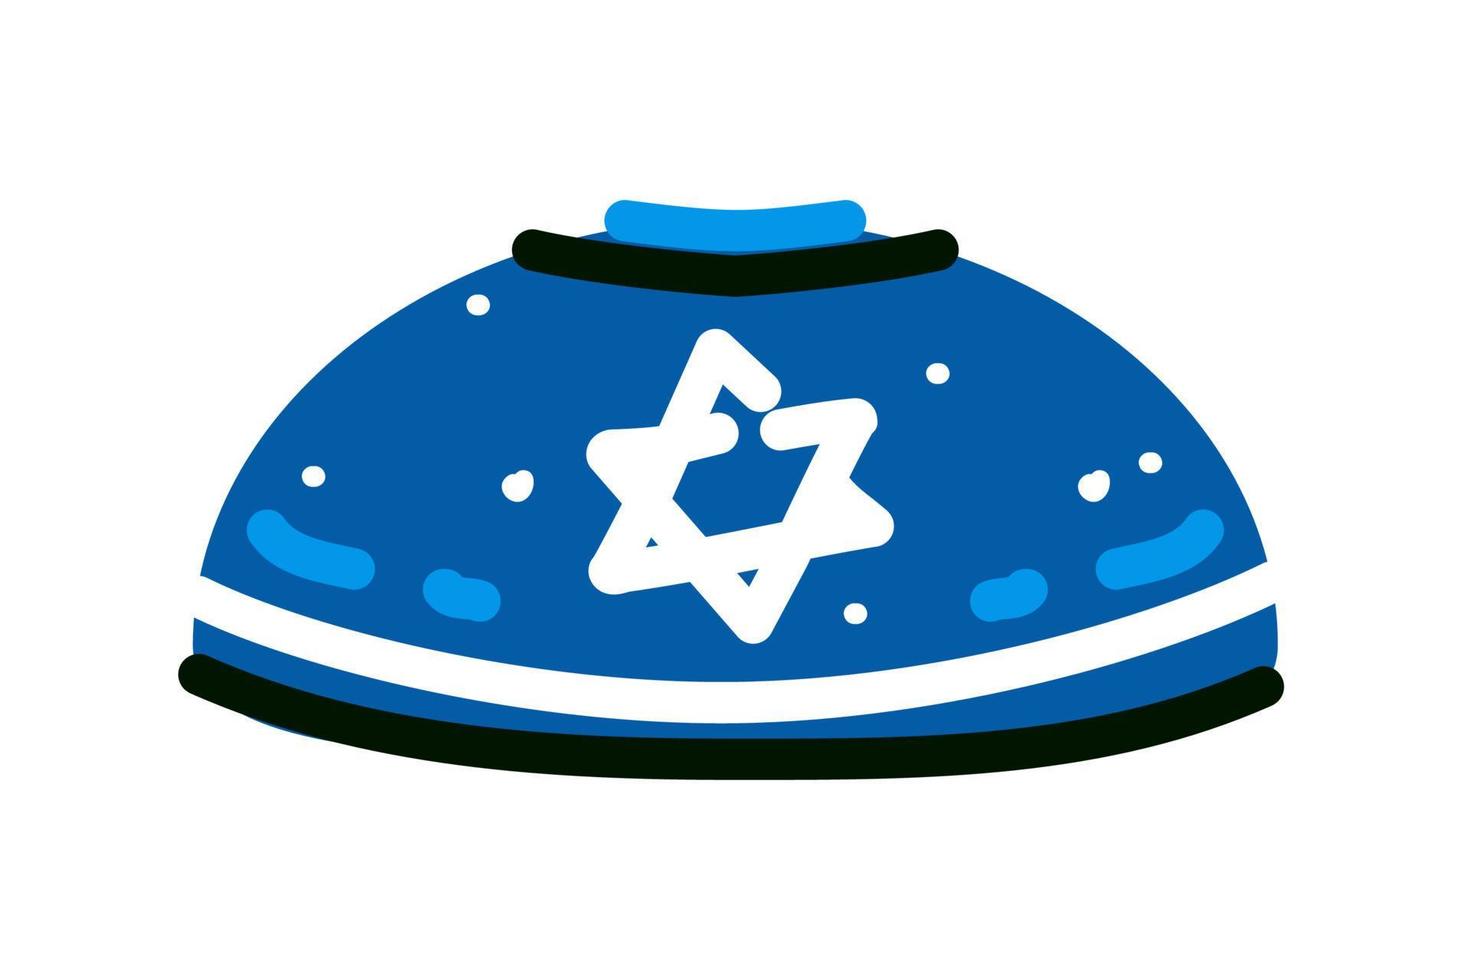 kippa, kippa, illustration vectorielle de couvre-chefs juifs sur fond blanc vecteur